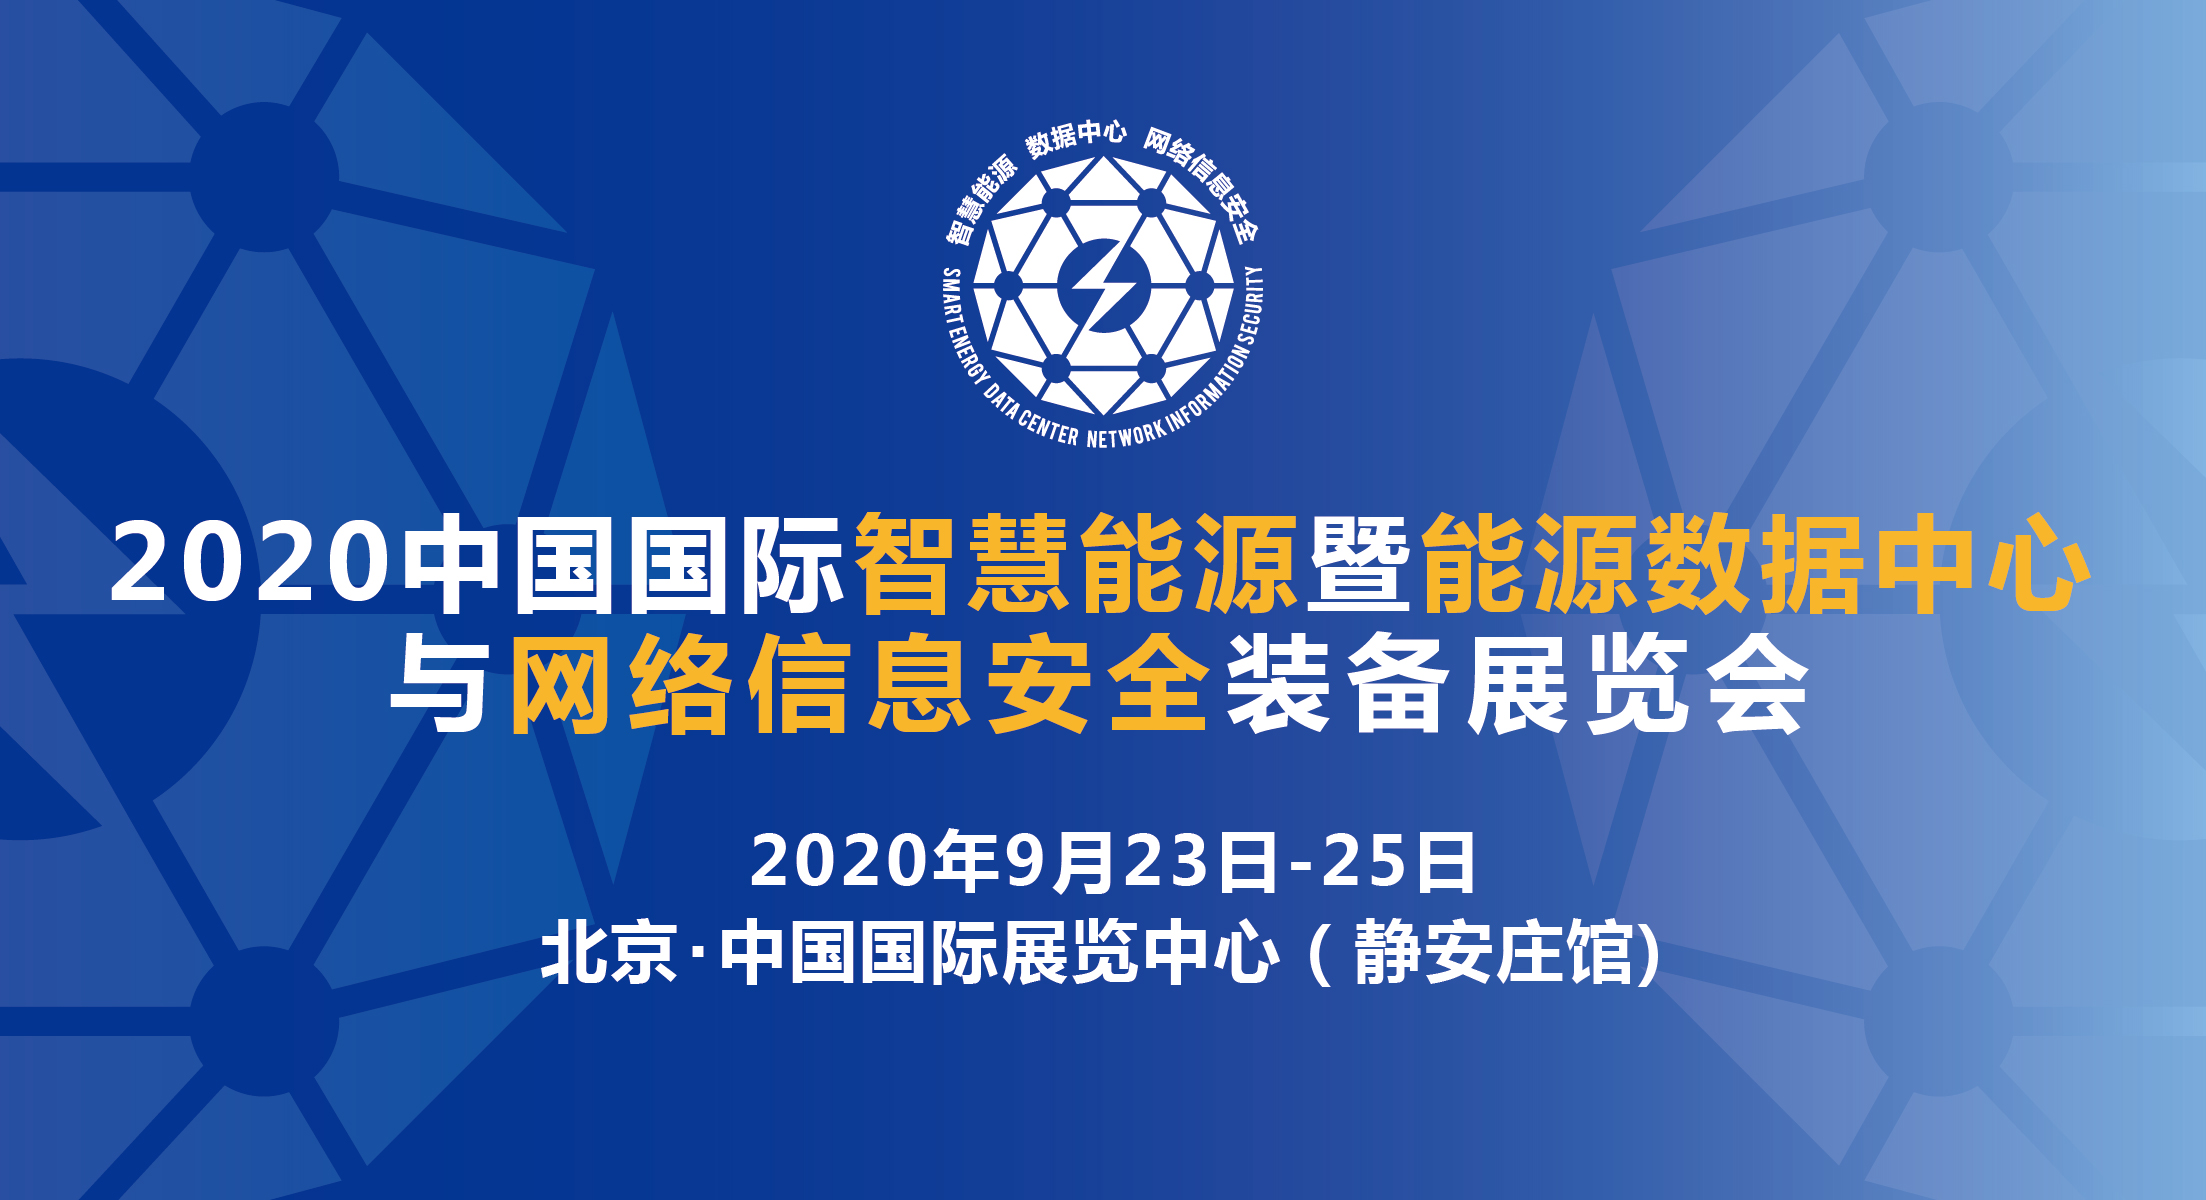  2020智慧能源暨能源数据中心与网络信息安全装备展延期至9月23日-25日在京举办